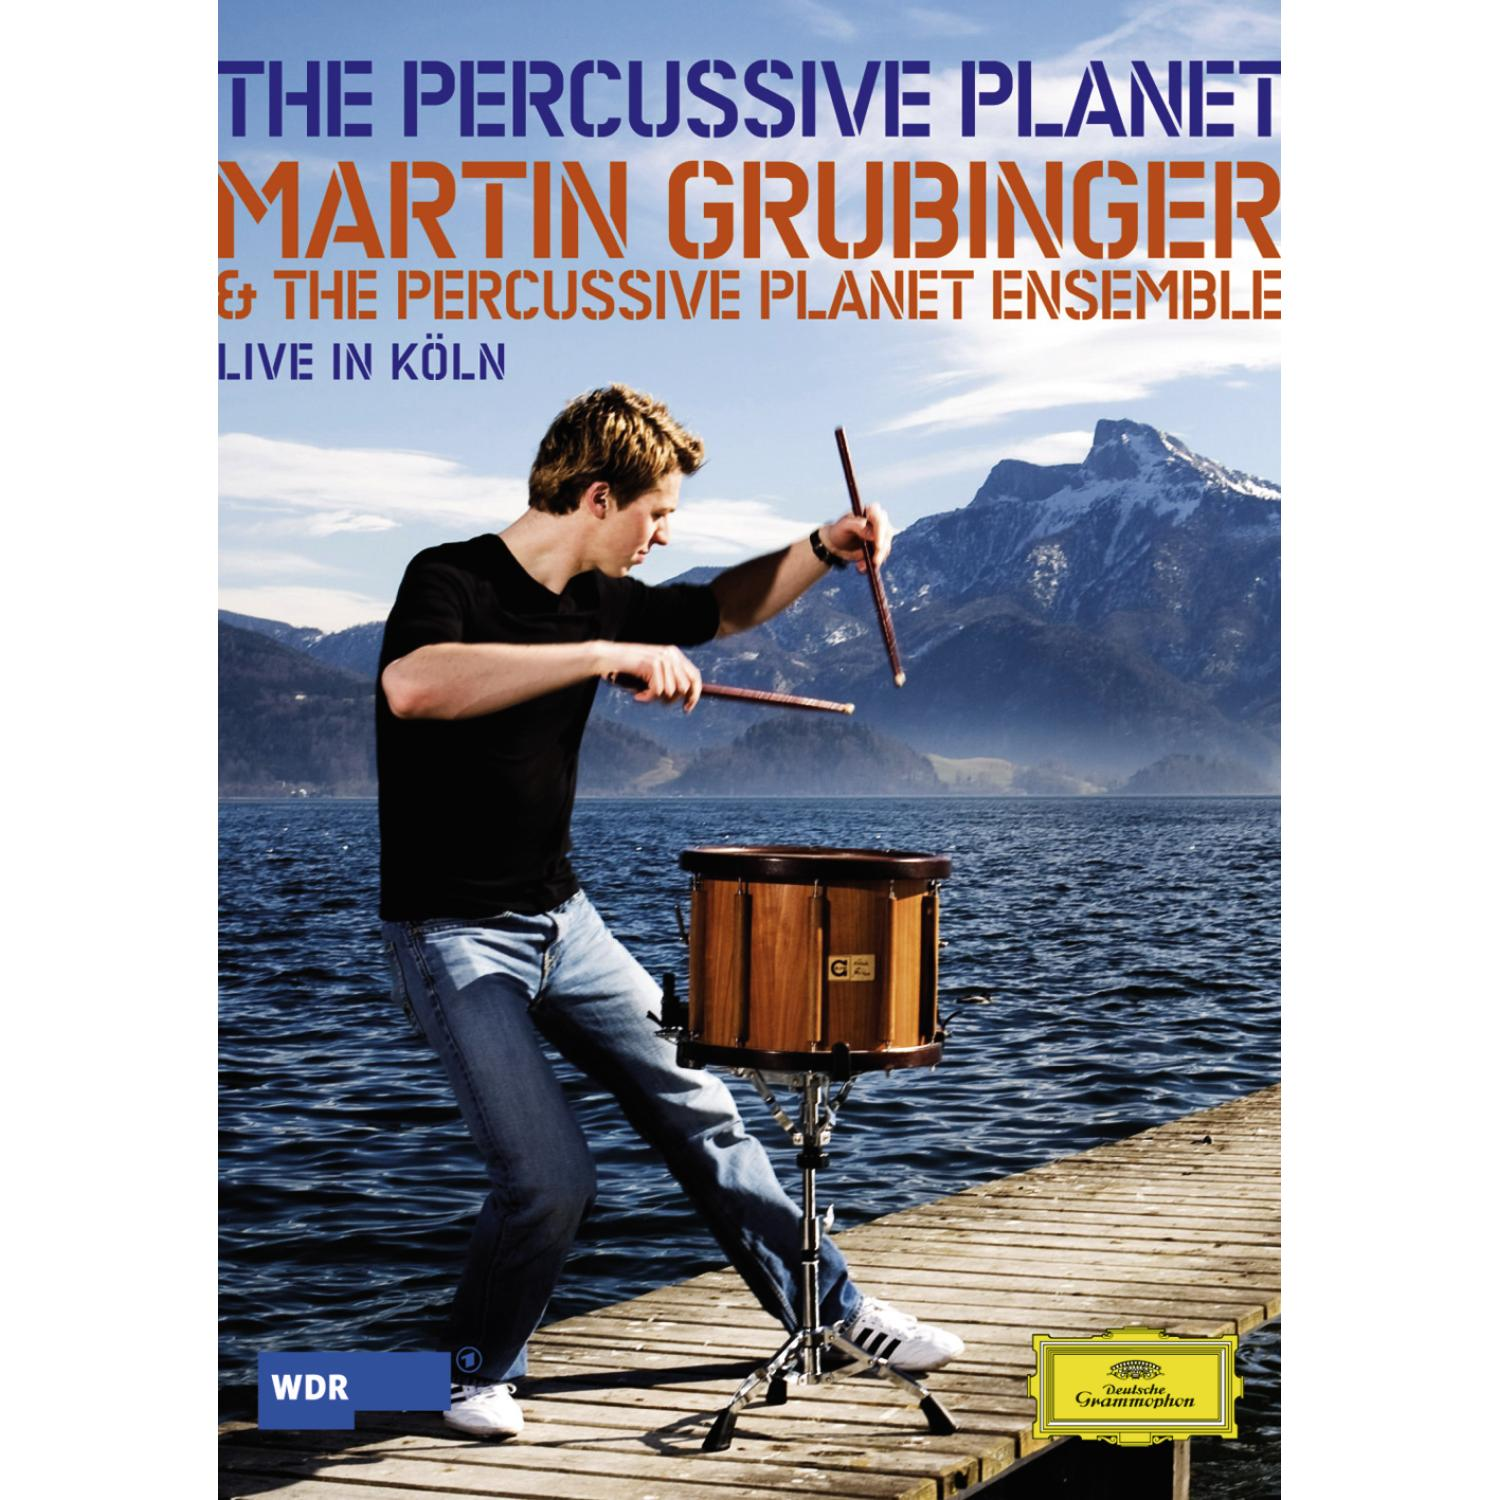 Martin Grubinger, The Persussive Planet Ensemble, (DVD) - THE Grubinger,Martin/Persussive PLANET Ensemble,The - Planet PERCUSSIVE